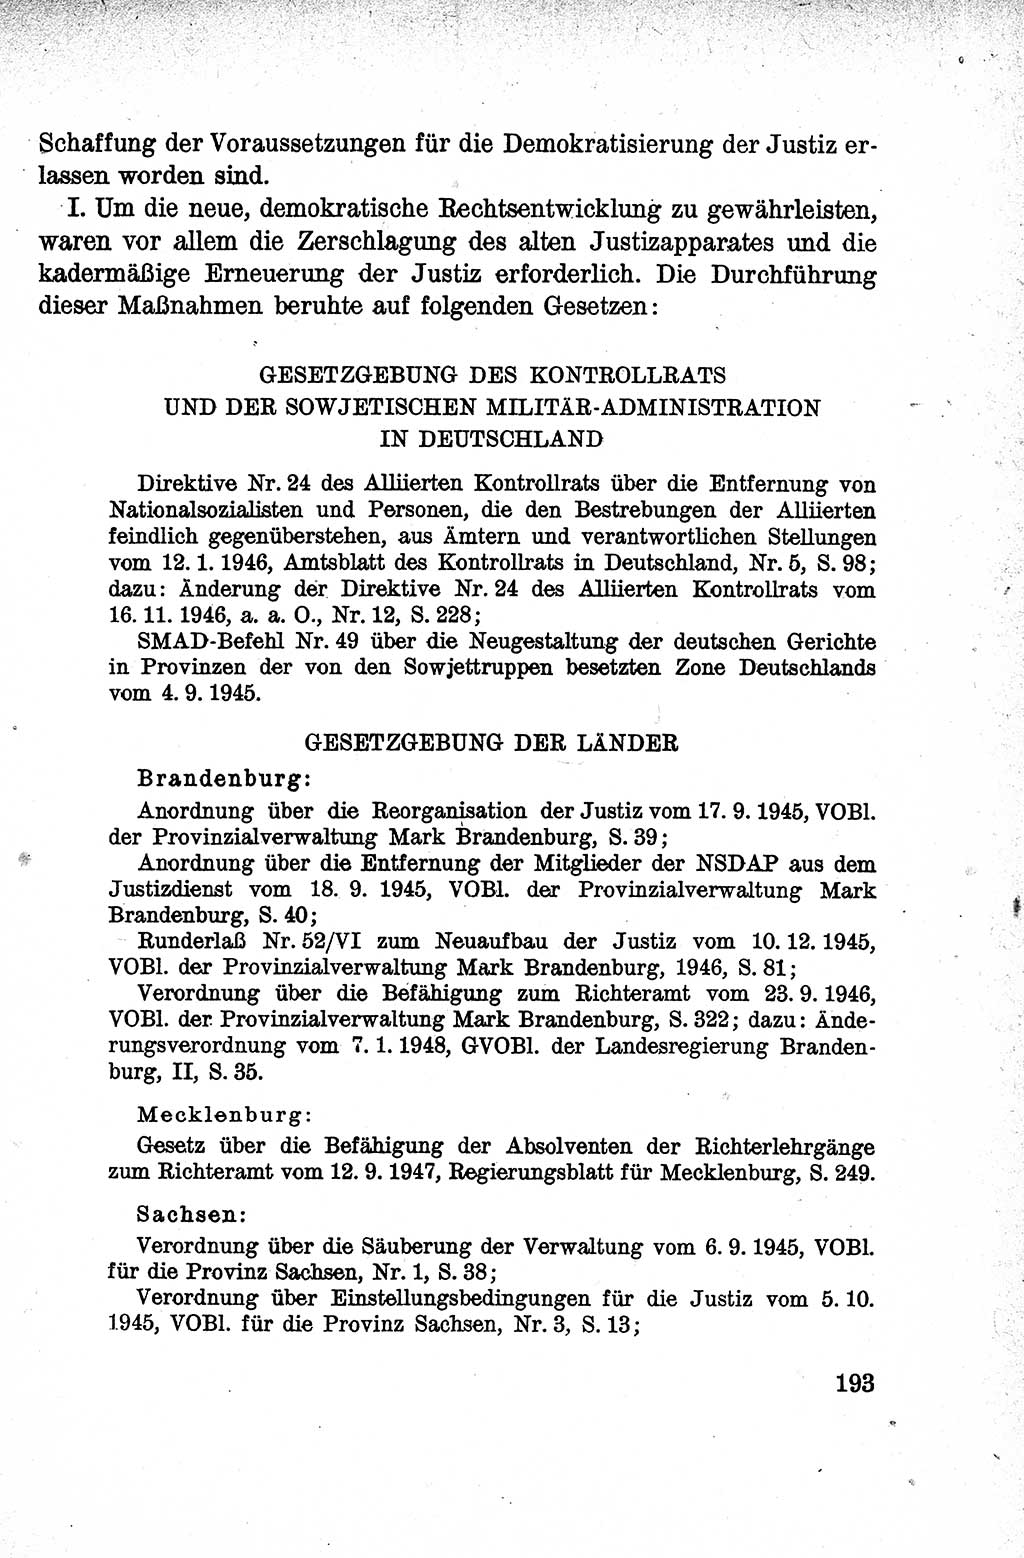 Lehrbuch des Strafrechts der Deutschen Demokratischen Republik (DDR), Allgemeiner Teil 1959, Seite 193 (Lb. Strafr. DDR AT 1959, S. 193)